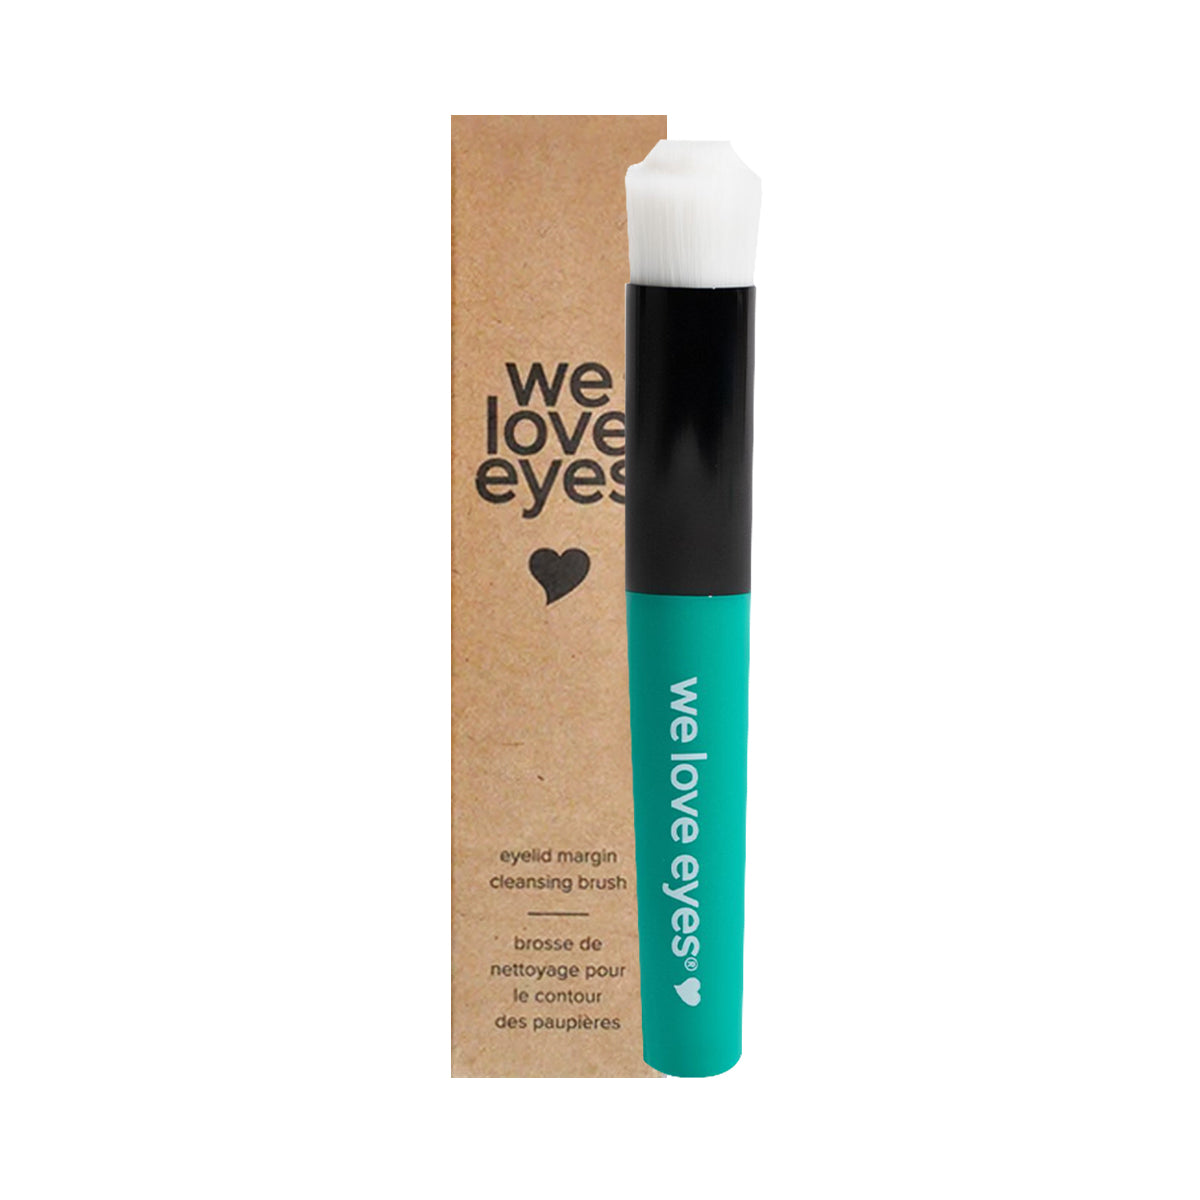 We Love Eyes -Eyelid Margin Cleansing Brush - Use with eyelid products